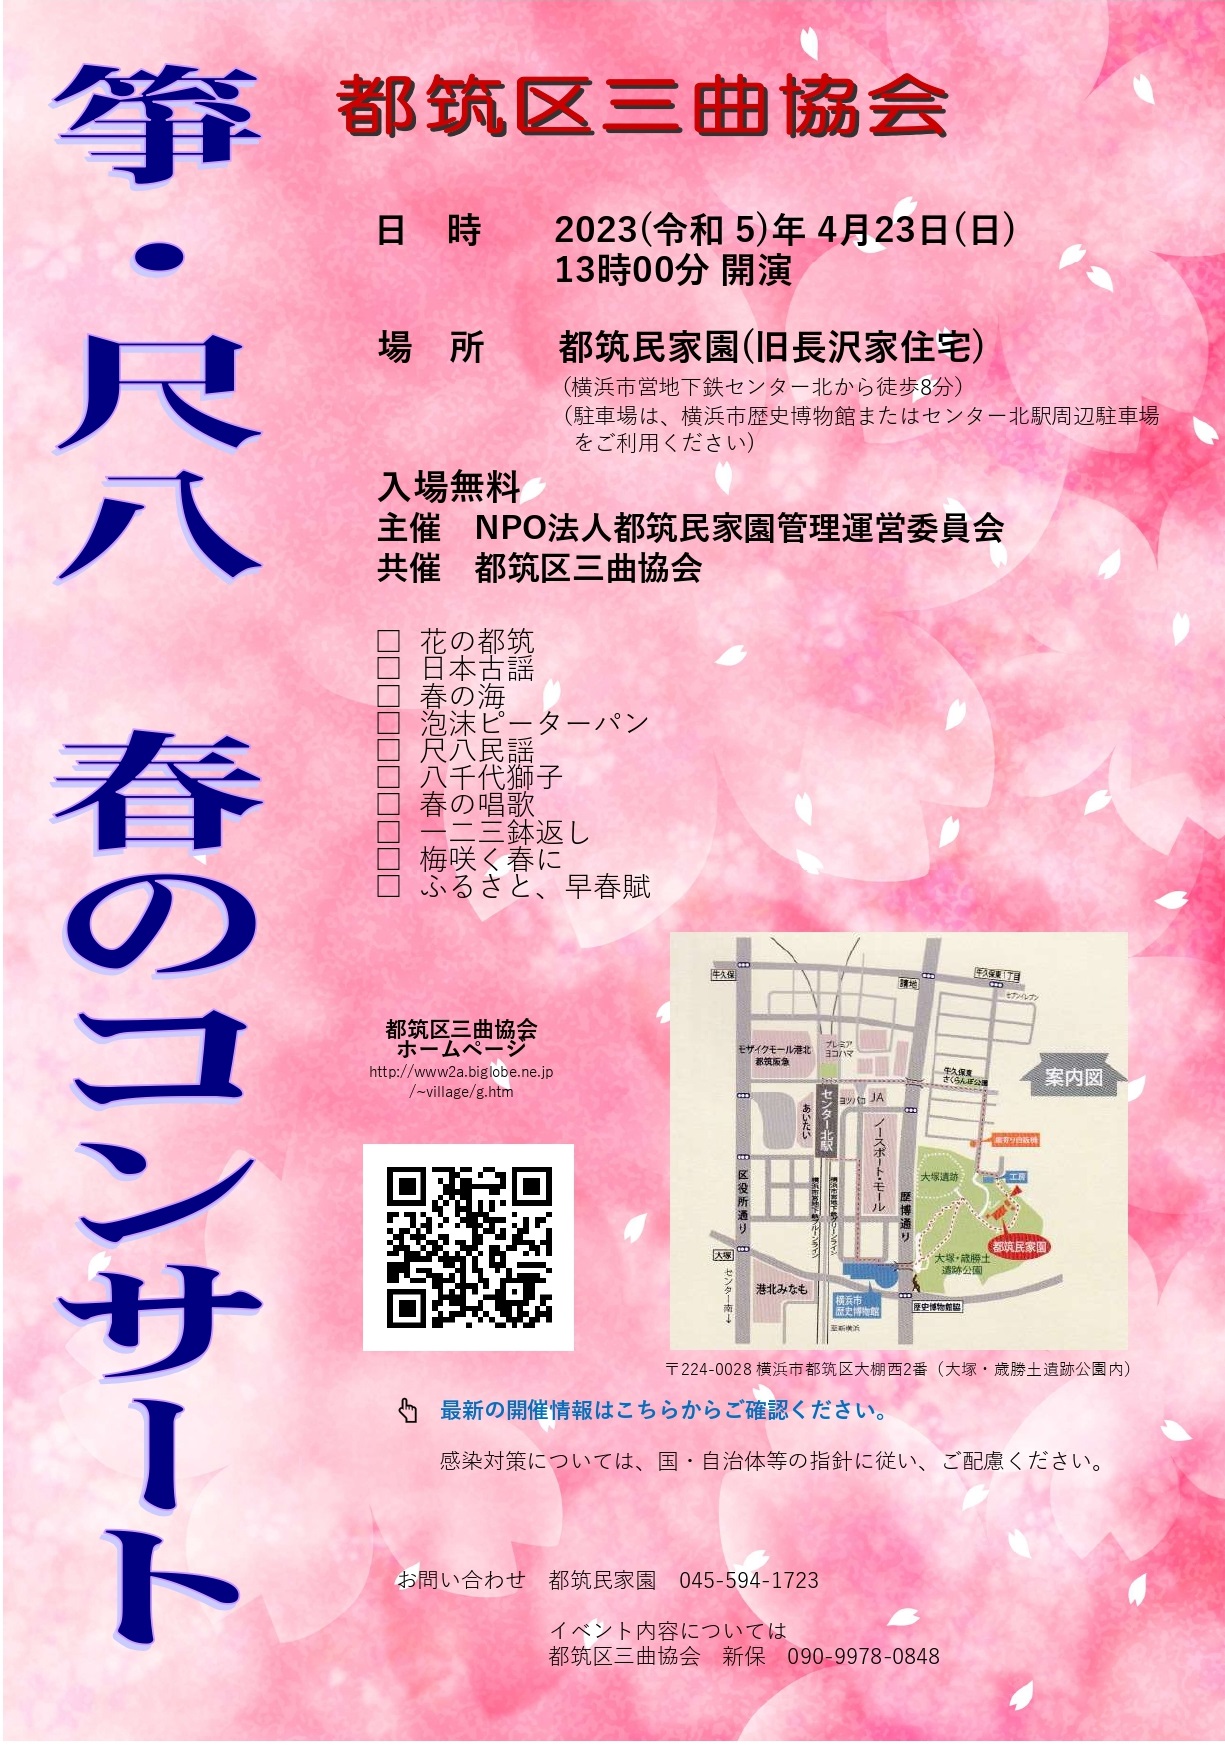 都筑区三曲協会 箏・尺八 春のコンサート